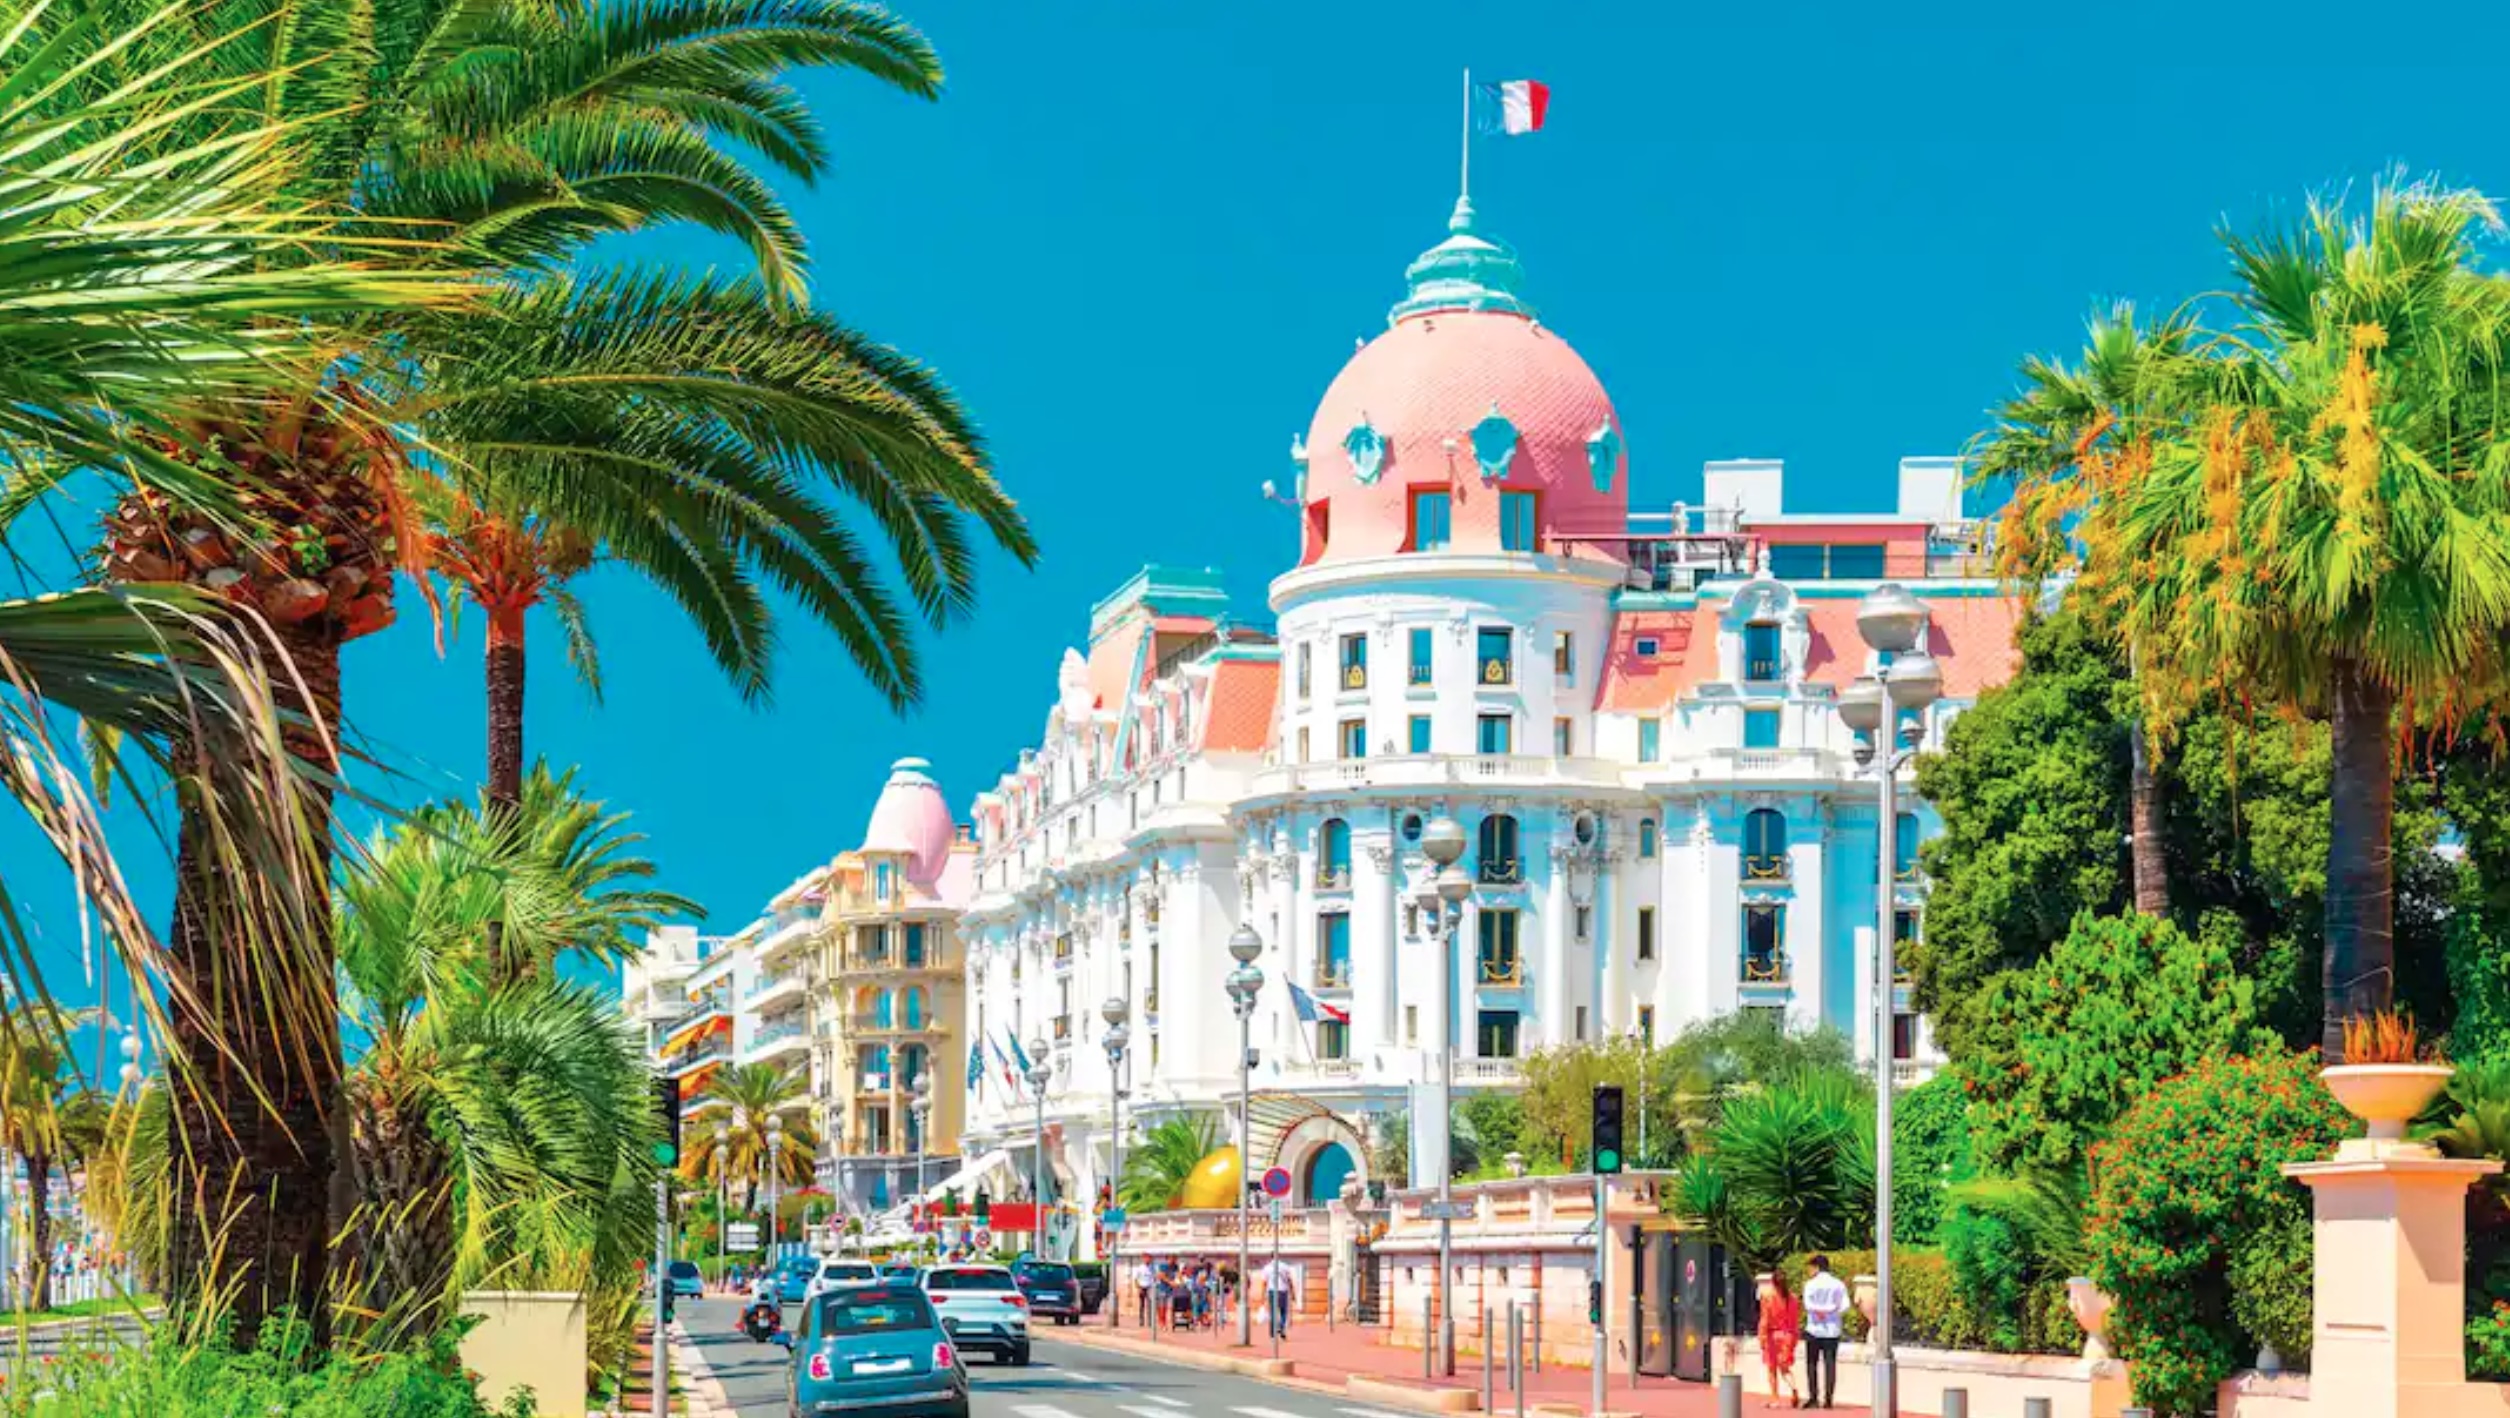 Hotel Negresco, Promenade des Anglais, Nice,